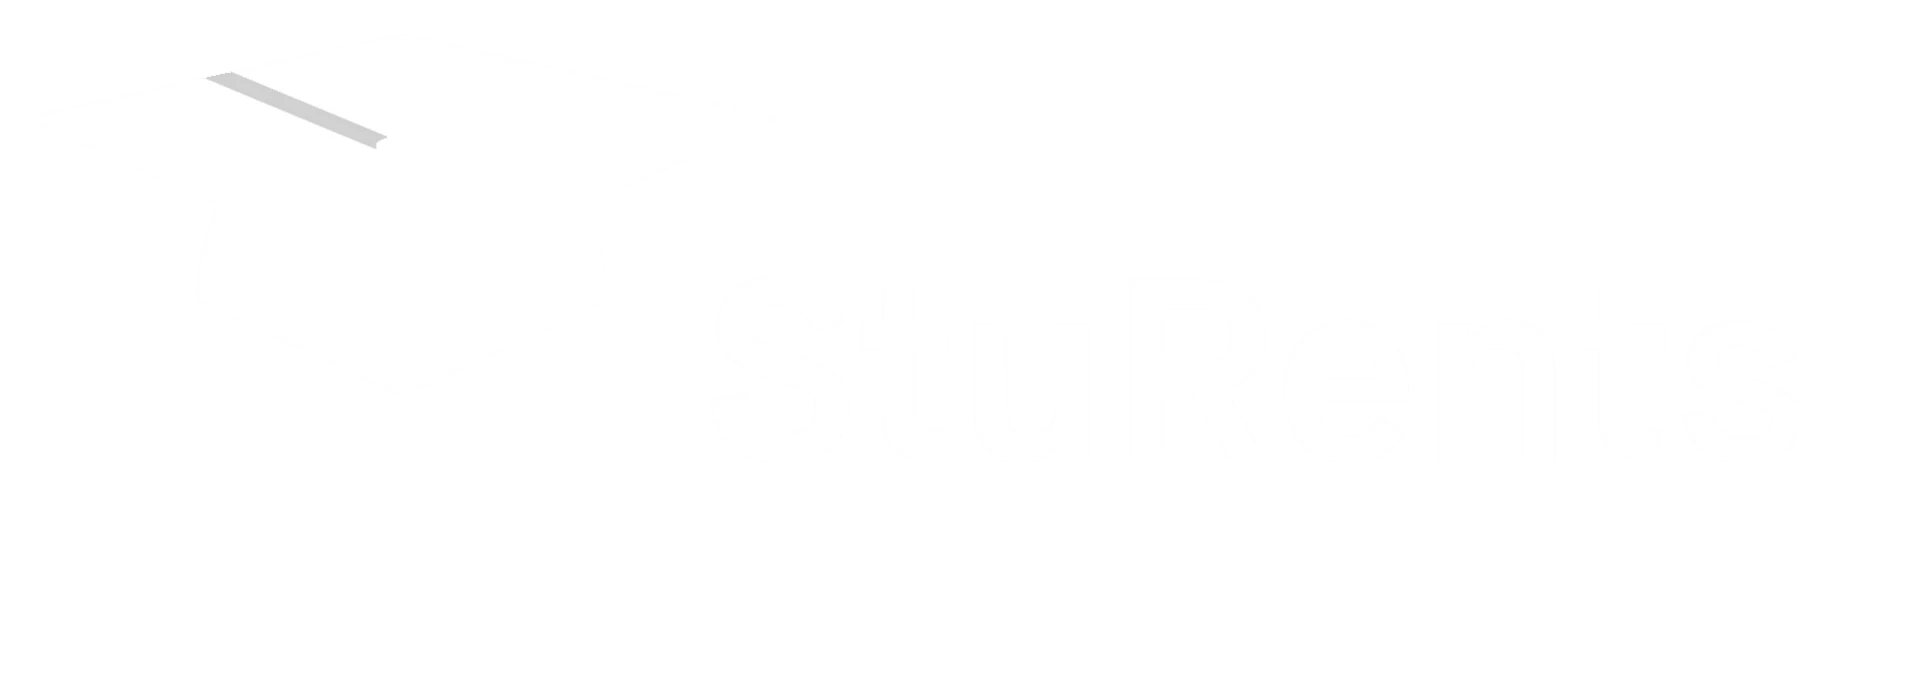 Find us on StuRents